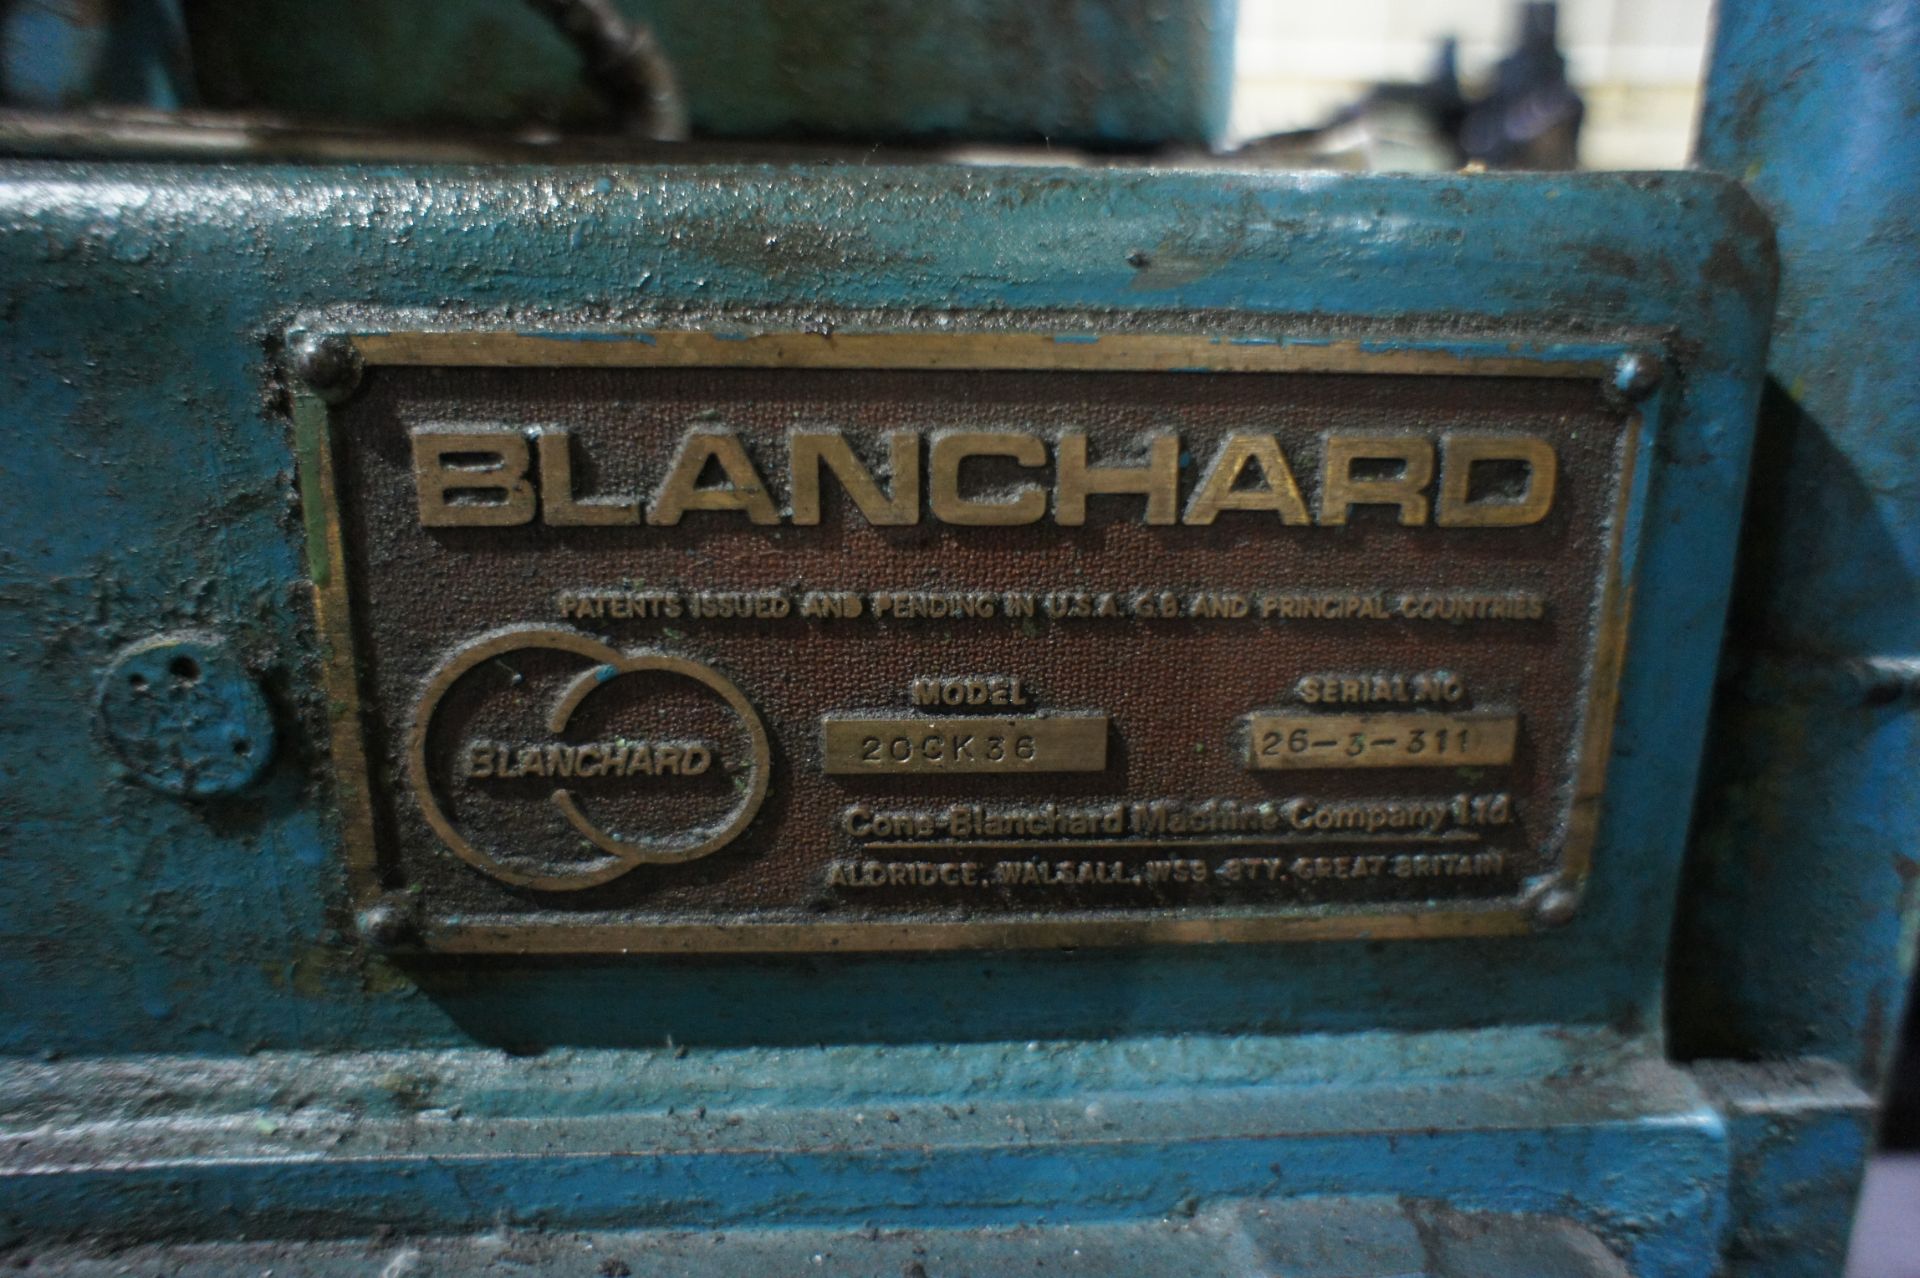 Blanchard 20-CK-36 segmental grinder - Bild 6 aus 7